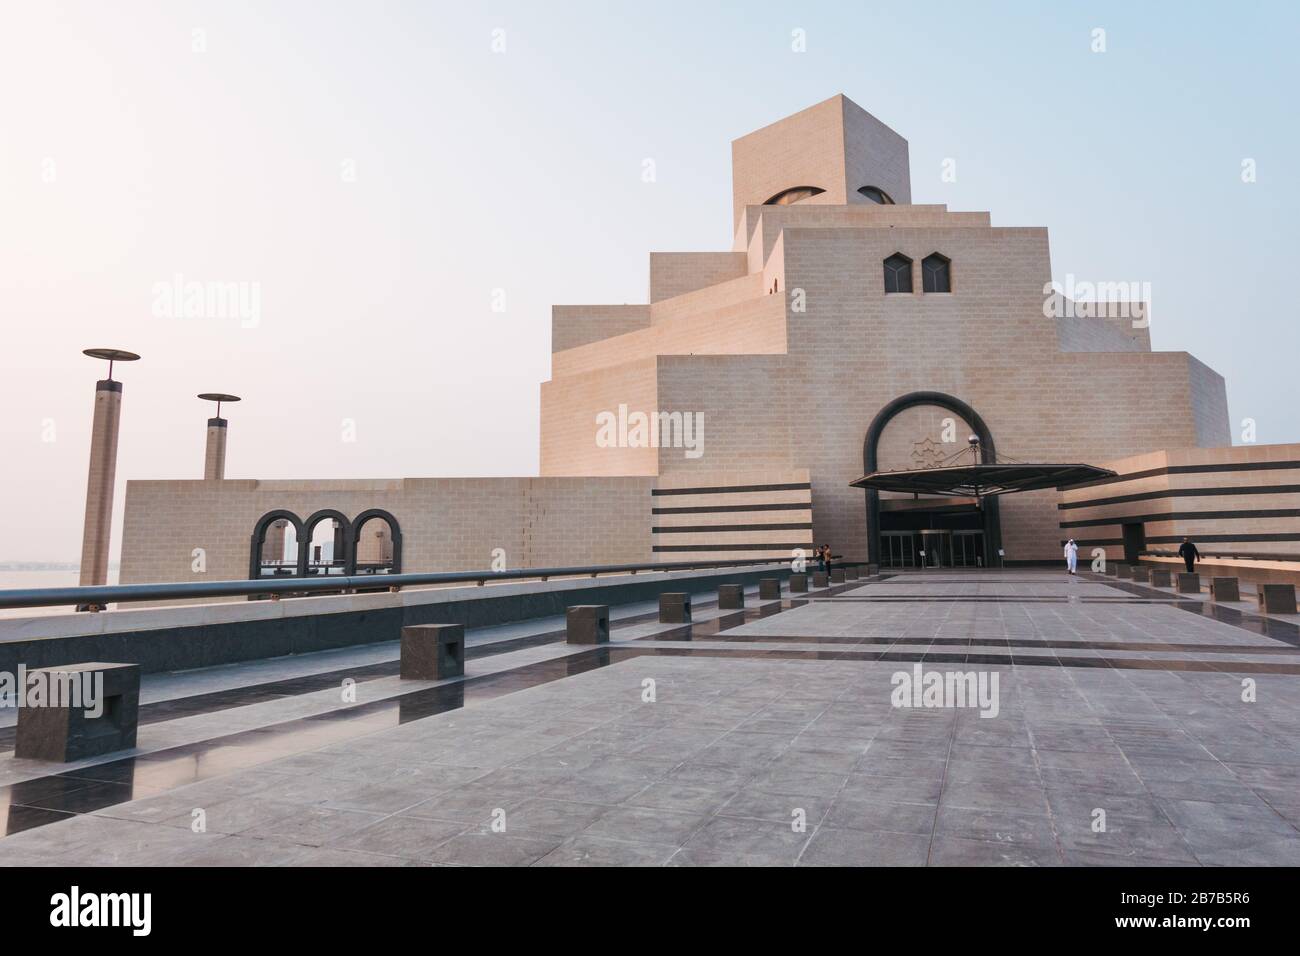 El Museo de Arte Islámico de Doha, con influencia arquitectónica islámica en un aspecto cuboide, diseñado por Ieoh Ming Pei Foto de stock